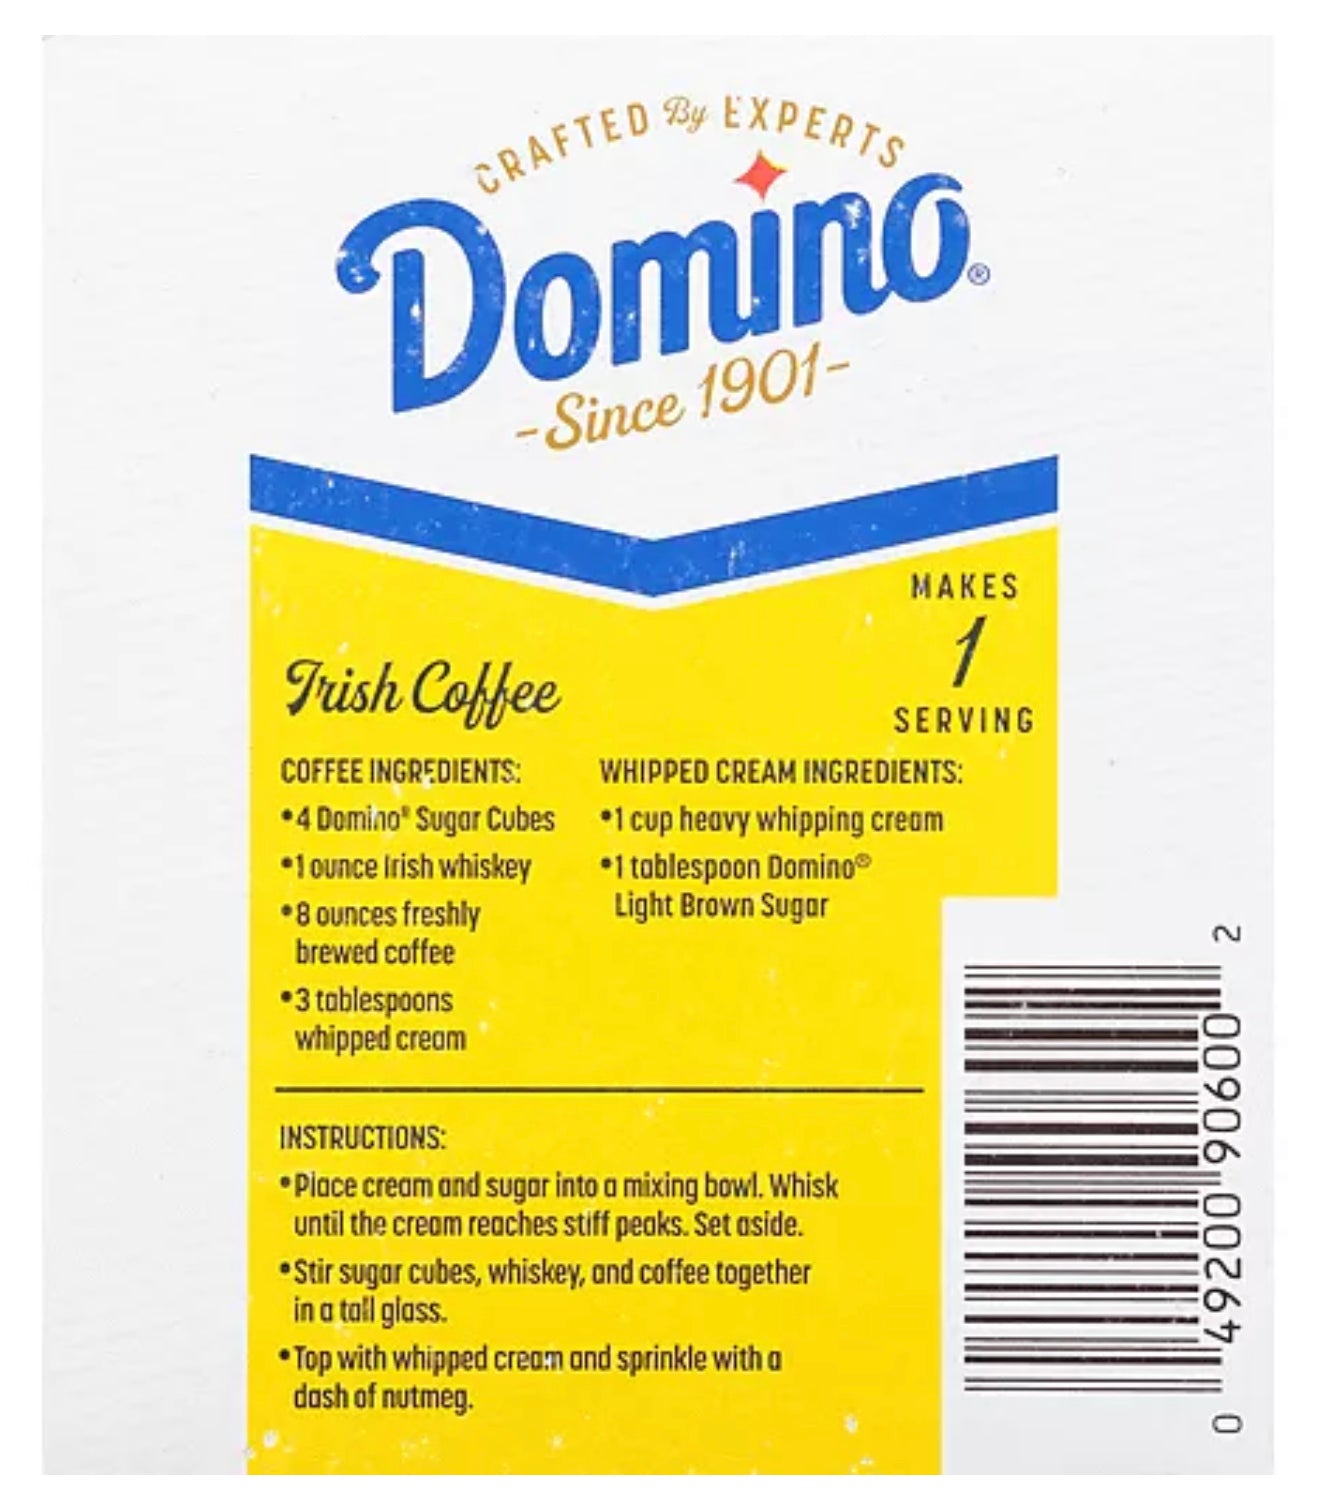 Domino Premium Pure Cane Sugar 126 Cubes